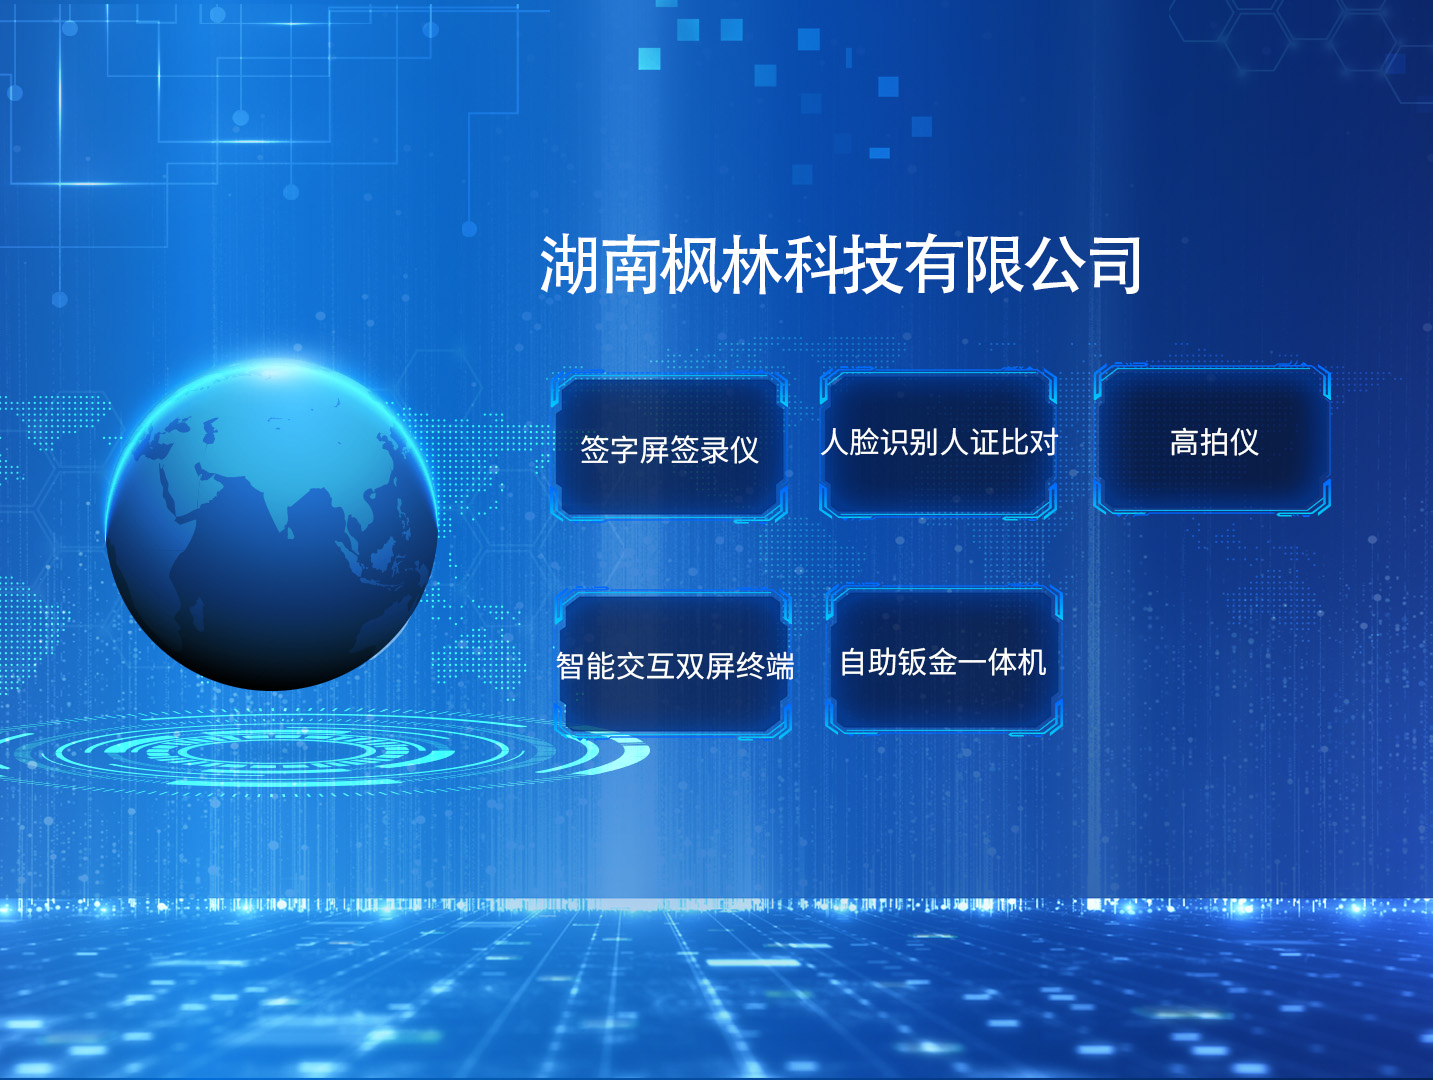 枫林操作系统国产化建设：提升信息安全与核心技术自主可控